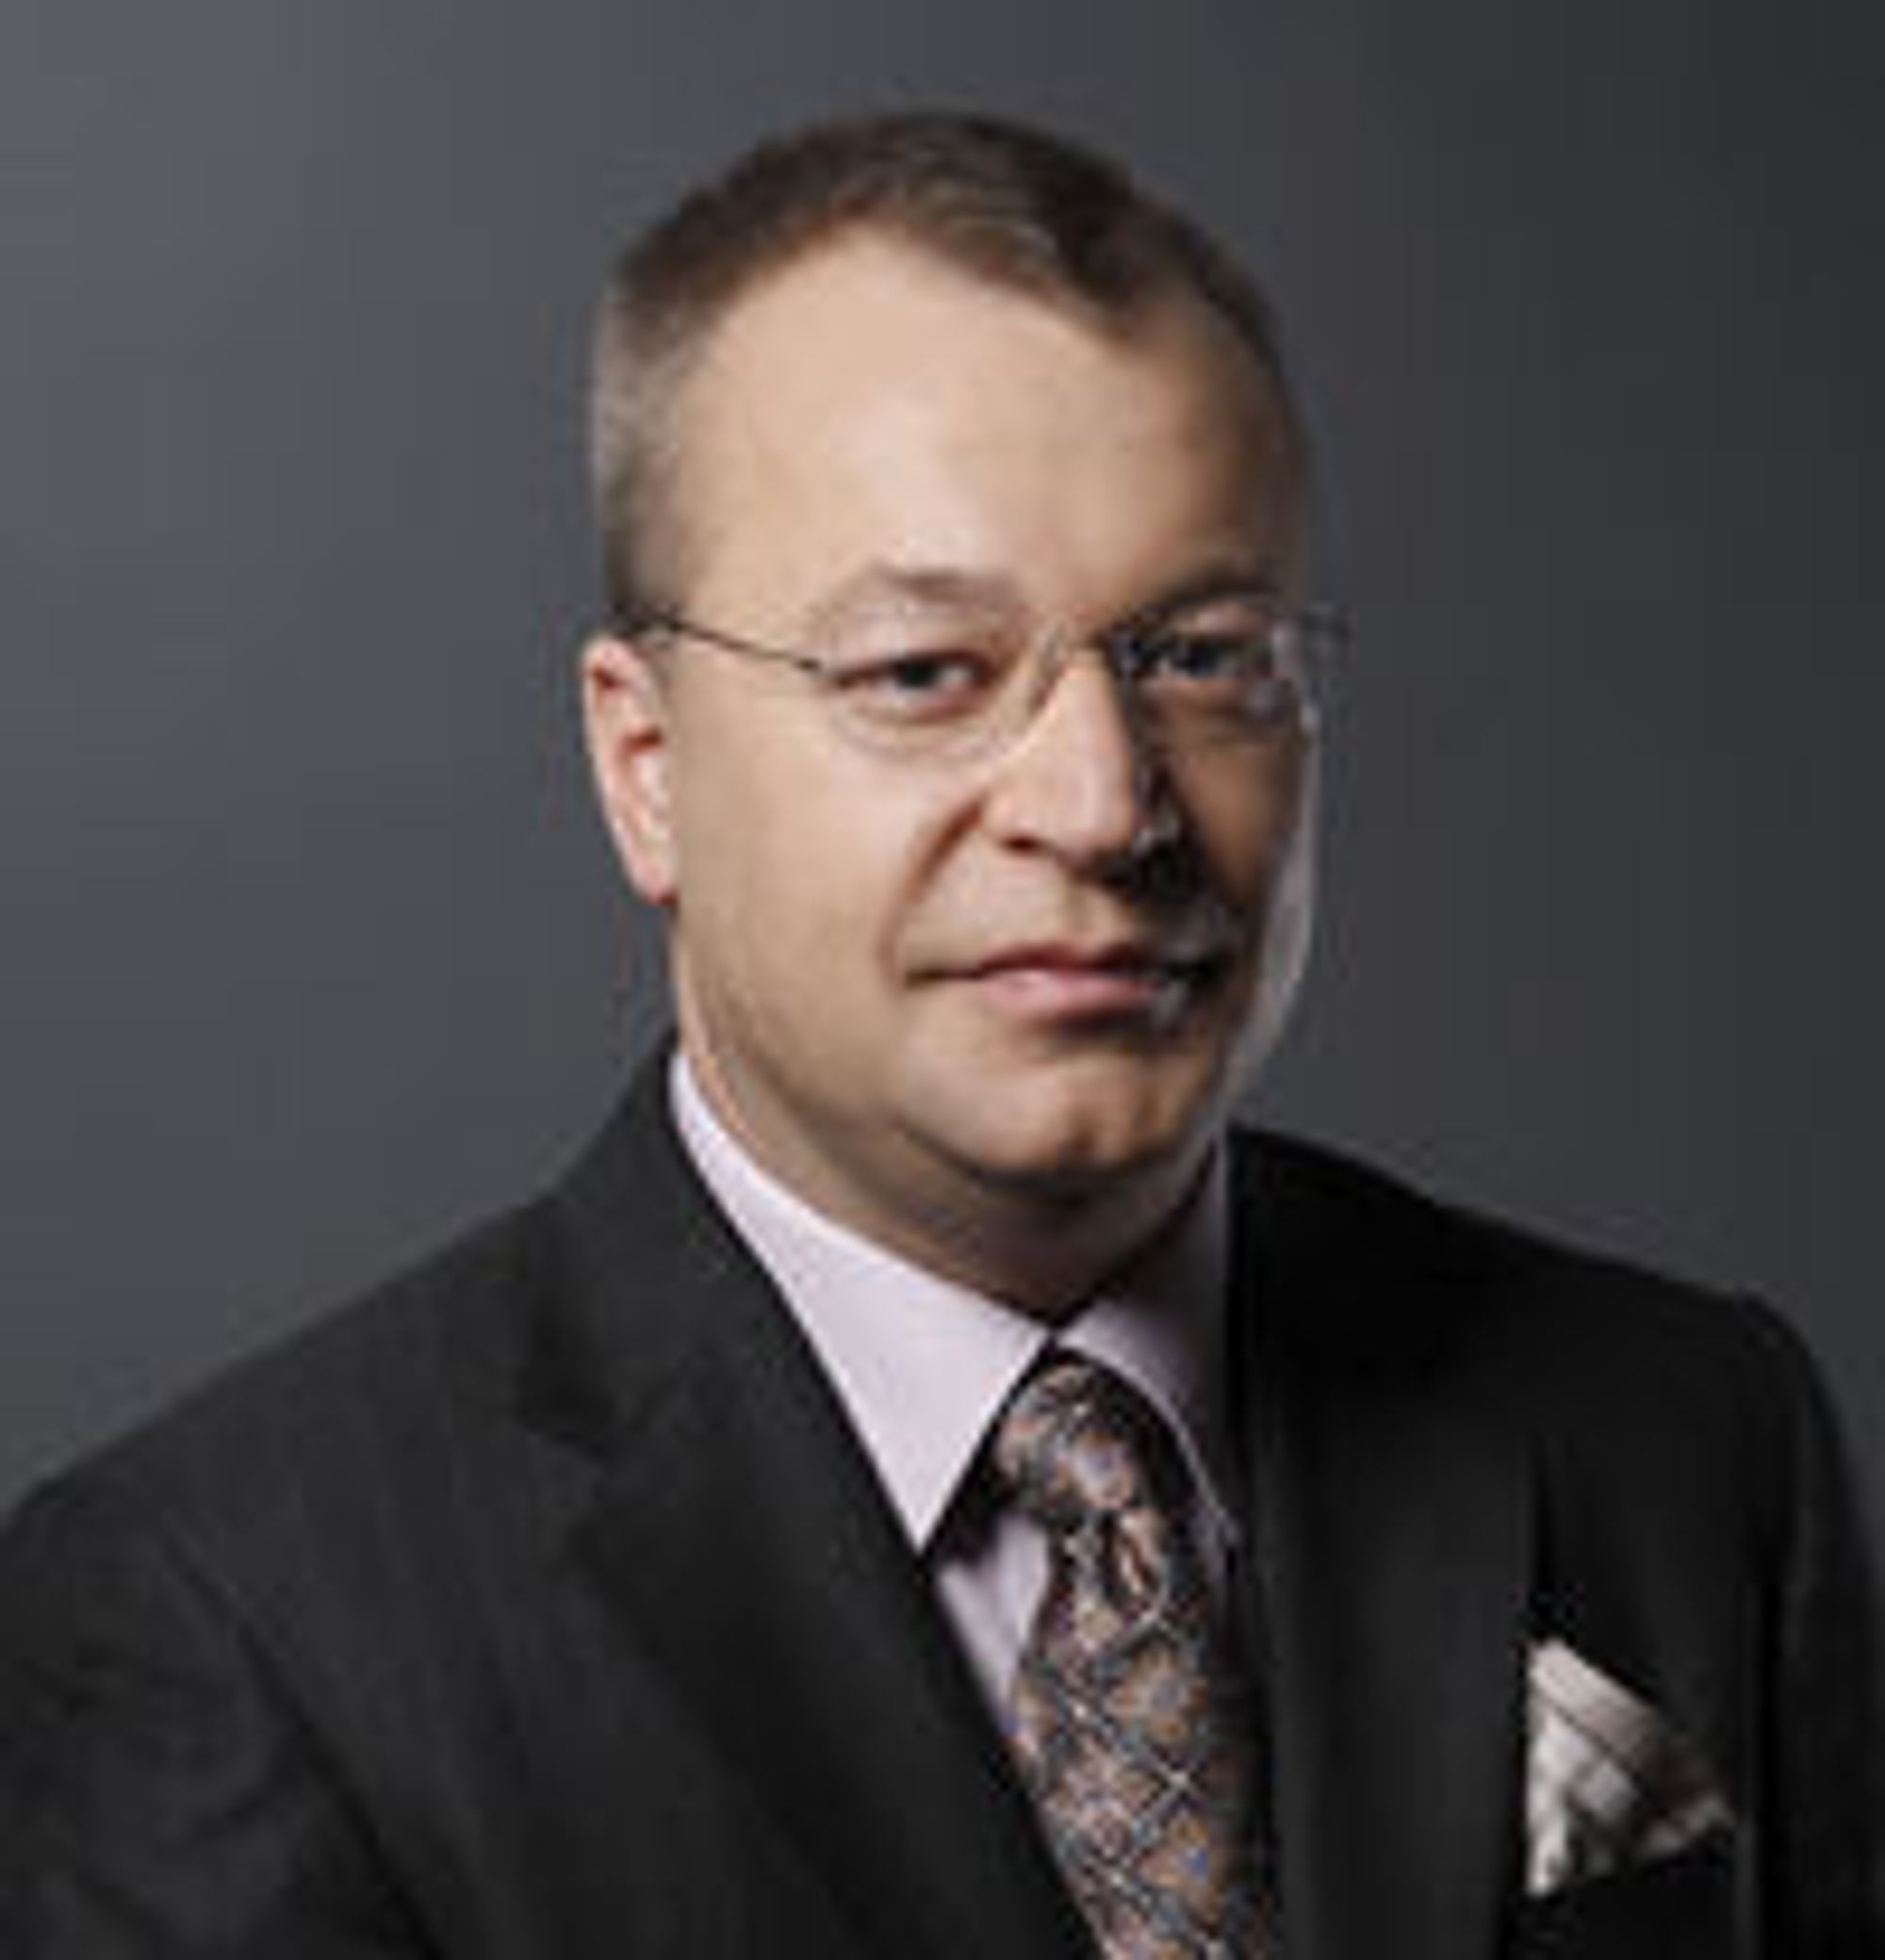 Stephen Elop er i dag sjef for «Business Division» i Microsoft. Han har tidligere hatt lederoppgaver i Juniper, Adobe og Macromedia. Han er kanadisk statsborger, og er utdannet i informatikk og ledelse ved McMaster University i Hamilton.